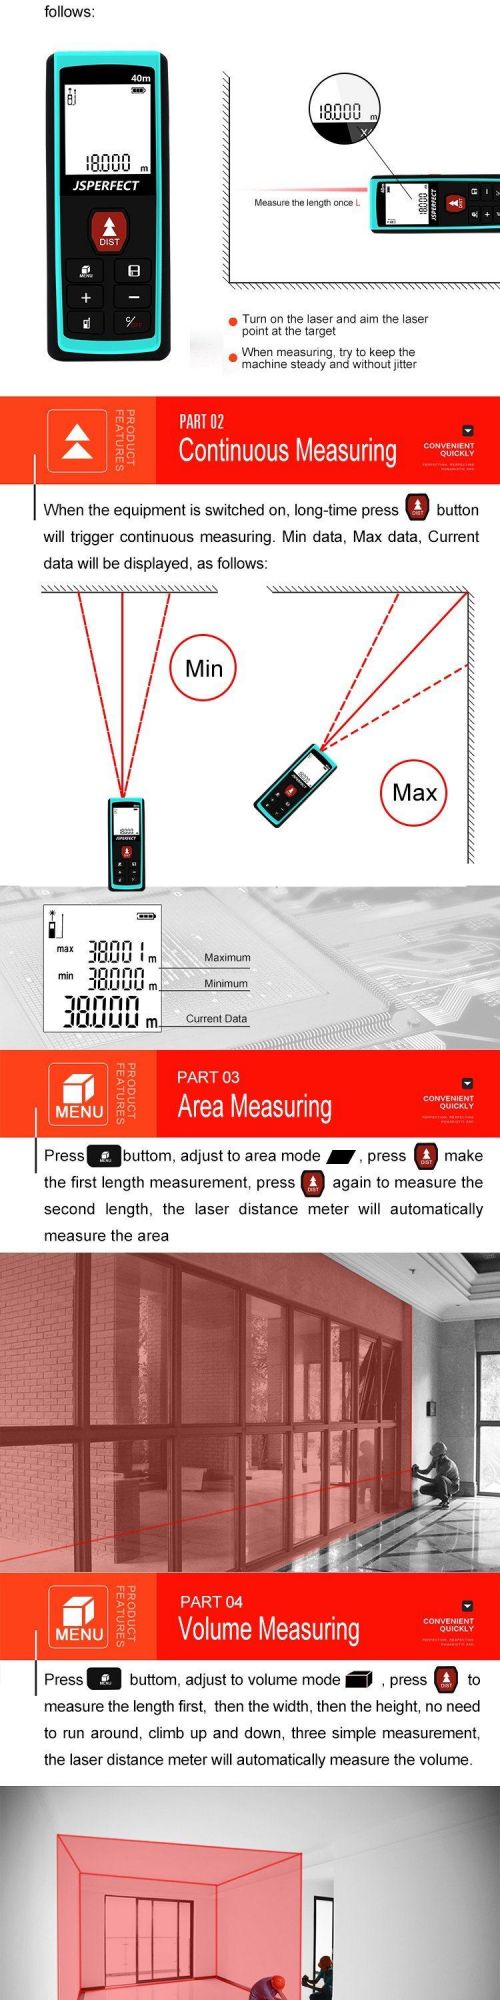 40m Infrared Electronic Handheld Laser Range Finder